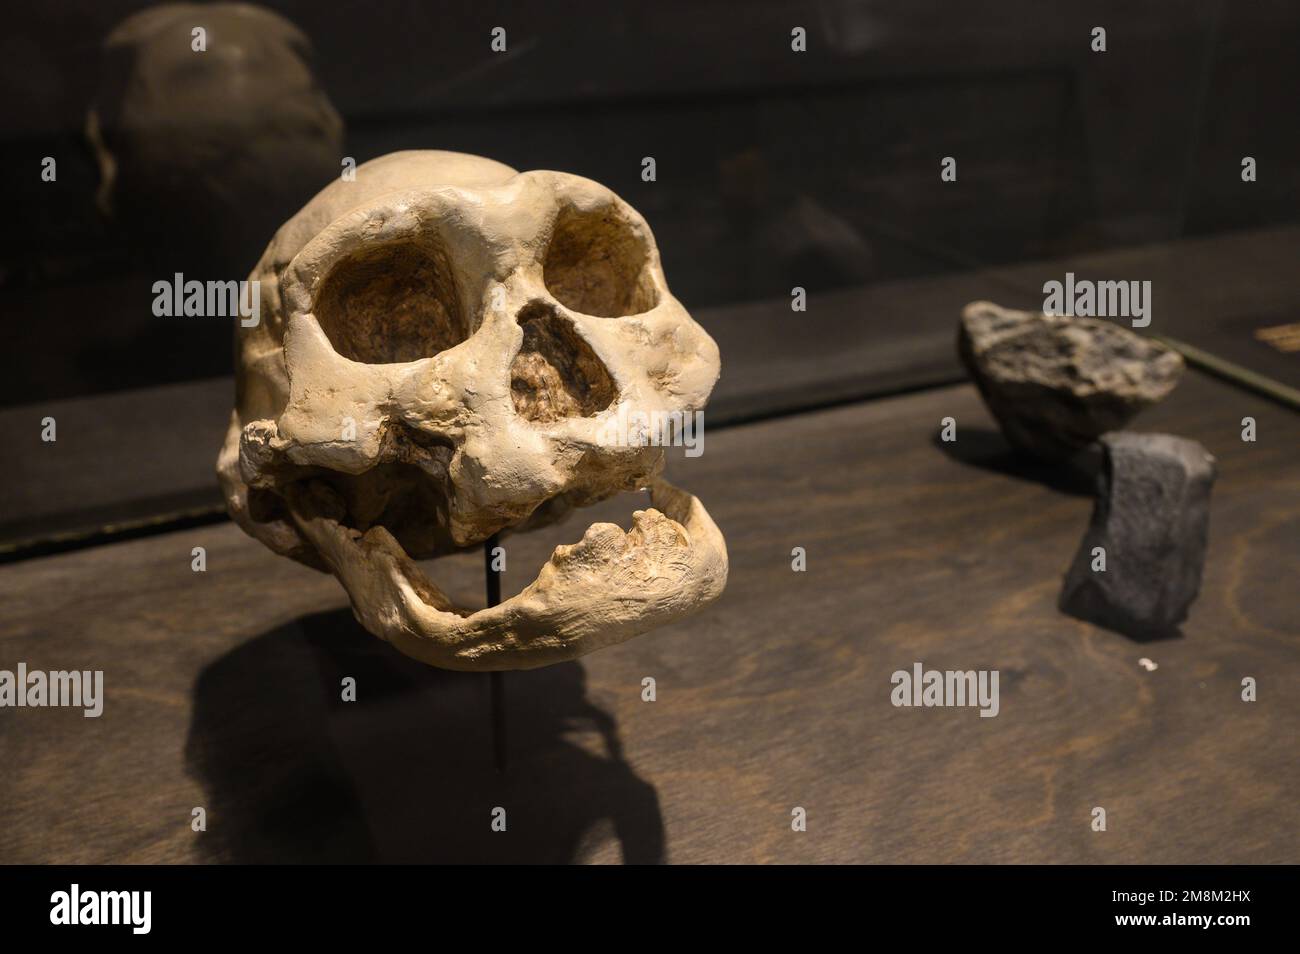 Homo georgicus trovato a Dmanisi, Georgia. Cranio e mandibola inferiore di un vecchio (calchi). In mostra al Museo di Scienze naturali di Bruxelles, Belgio. Foto Stock